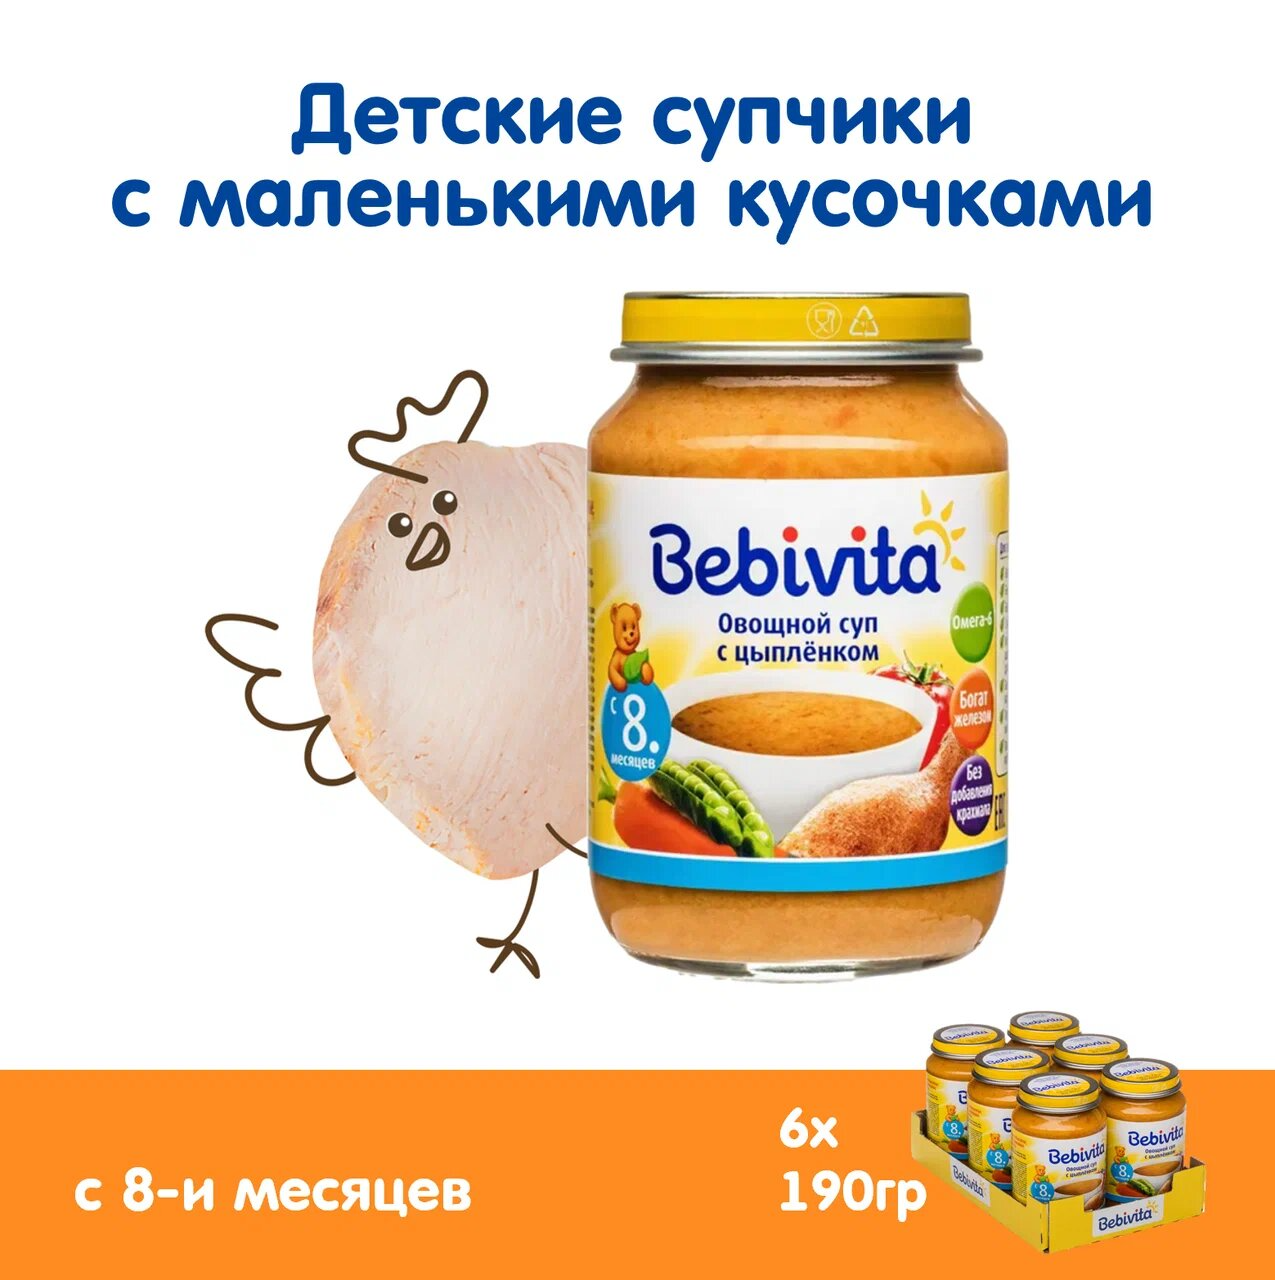 Детский суп-пюре Bebivita "Овощной суп с цыплёнком", обогащенное железом, 190 гр., 6 шт